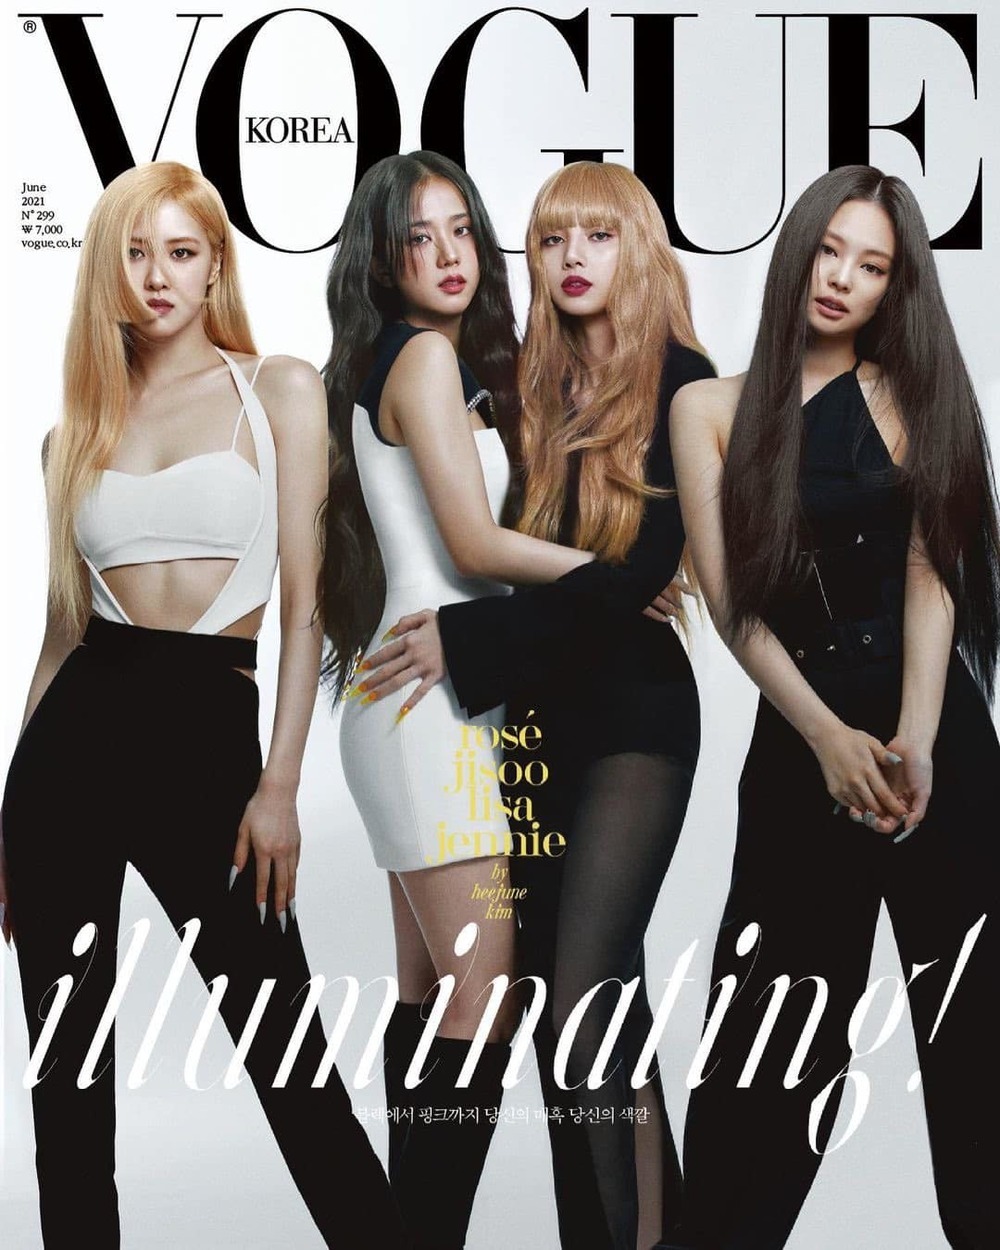  
Lisa đứng giữa trên trang bìa tạp chí VOGUE Korea. (Ảnh: VOGUE Korea)